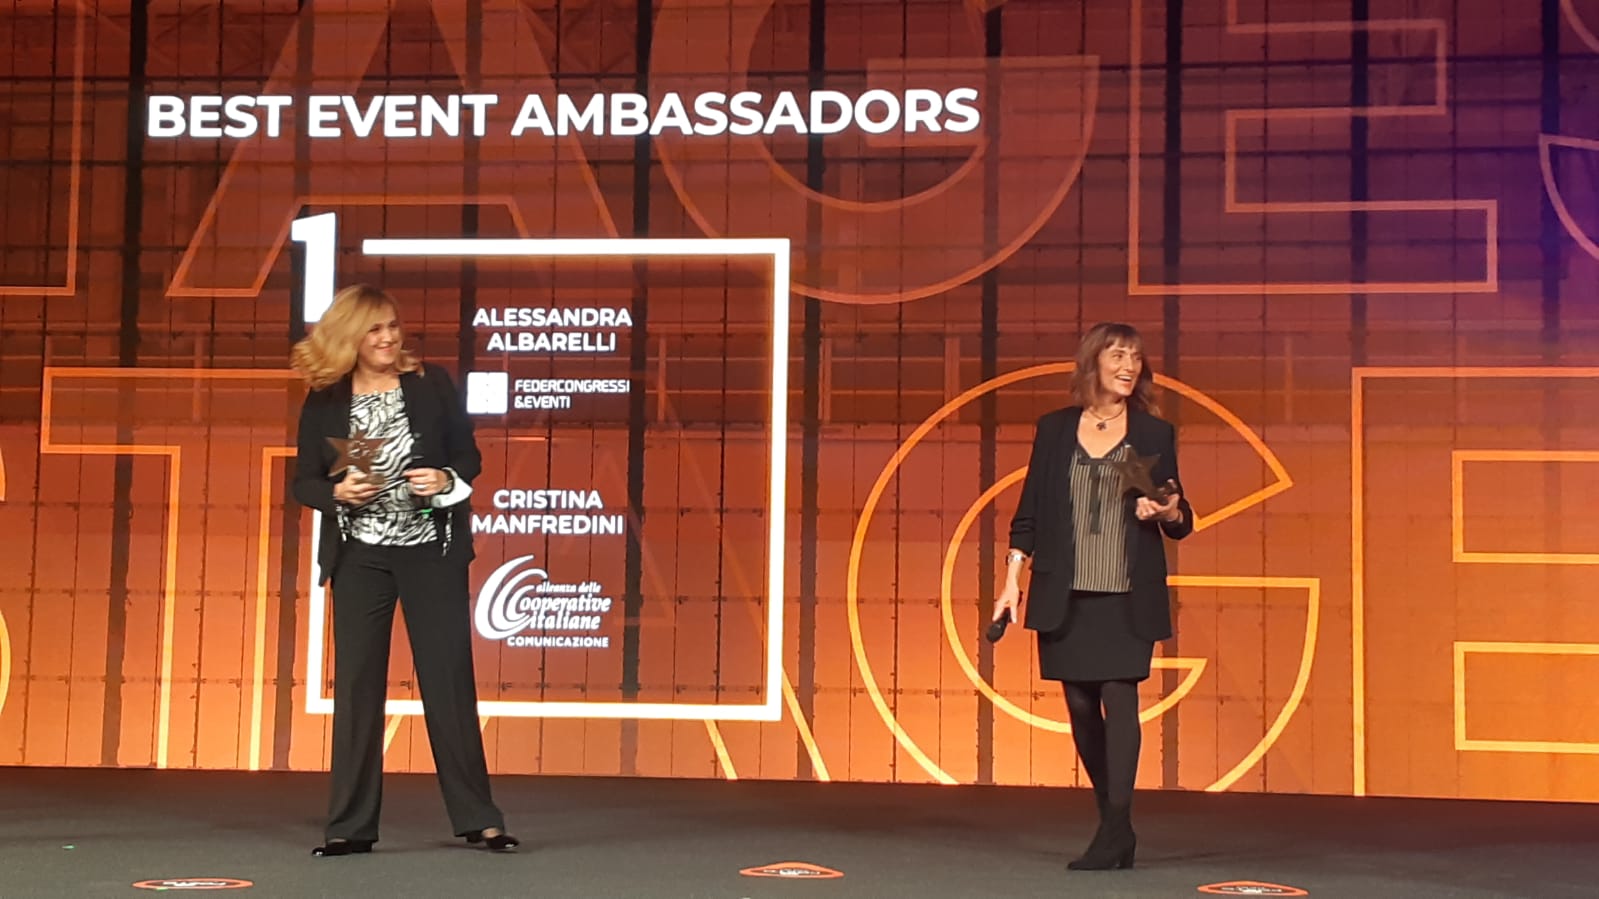 Best Event Awards Italia: assegnati gli Oscar. M.Cristina Manfredini, presidente Mediagroup98 e delegata da Alleanza Cooperative Italiane in Italialive, è Best Event Ambassador dell’anno